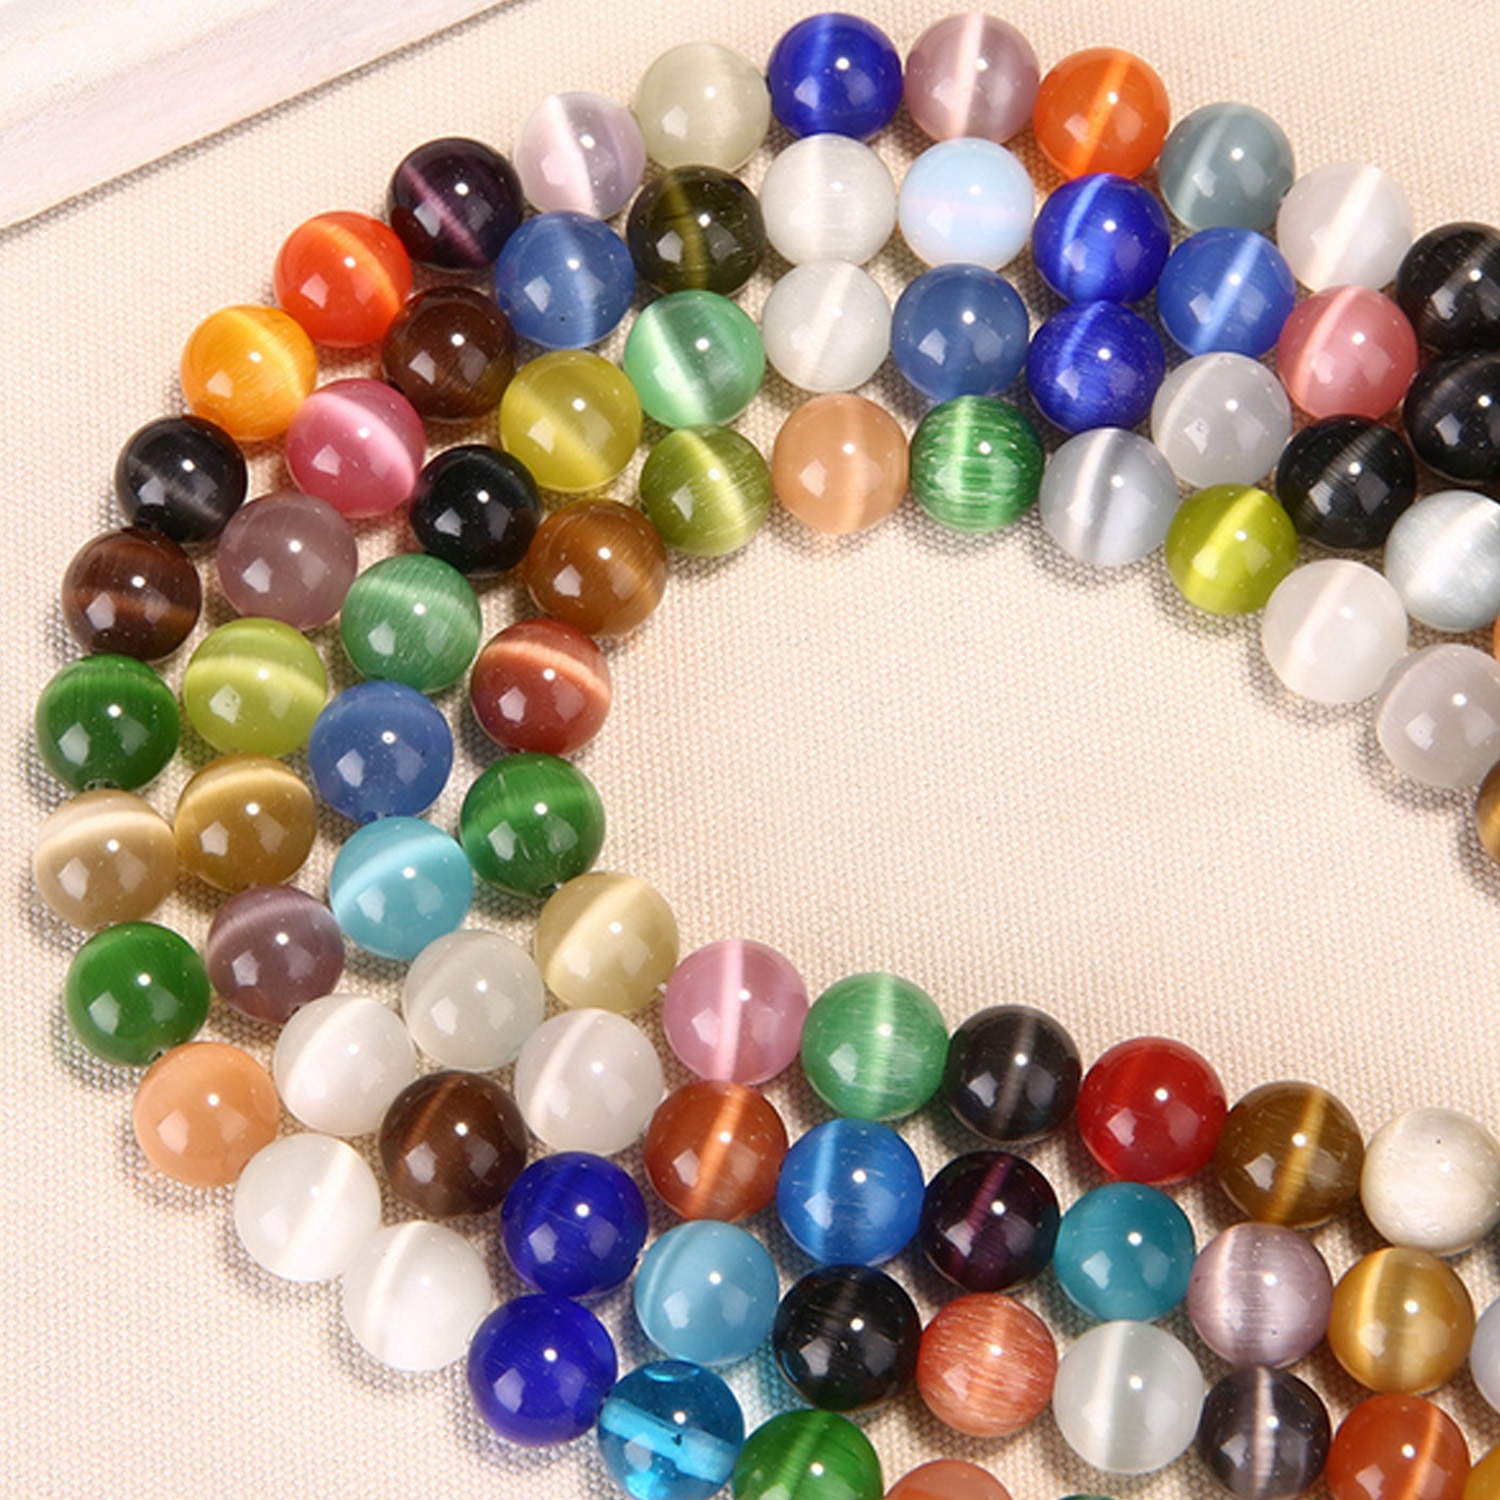 132 pcs 6mm multi-color Natuurlijke Ronde Opal Stone Gemstone Bead Handgemaakte Speelgoed voor DIY Craft Maken Kind kralen Speelgoed Educatief Speelgoed